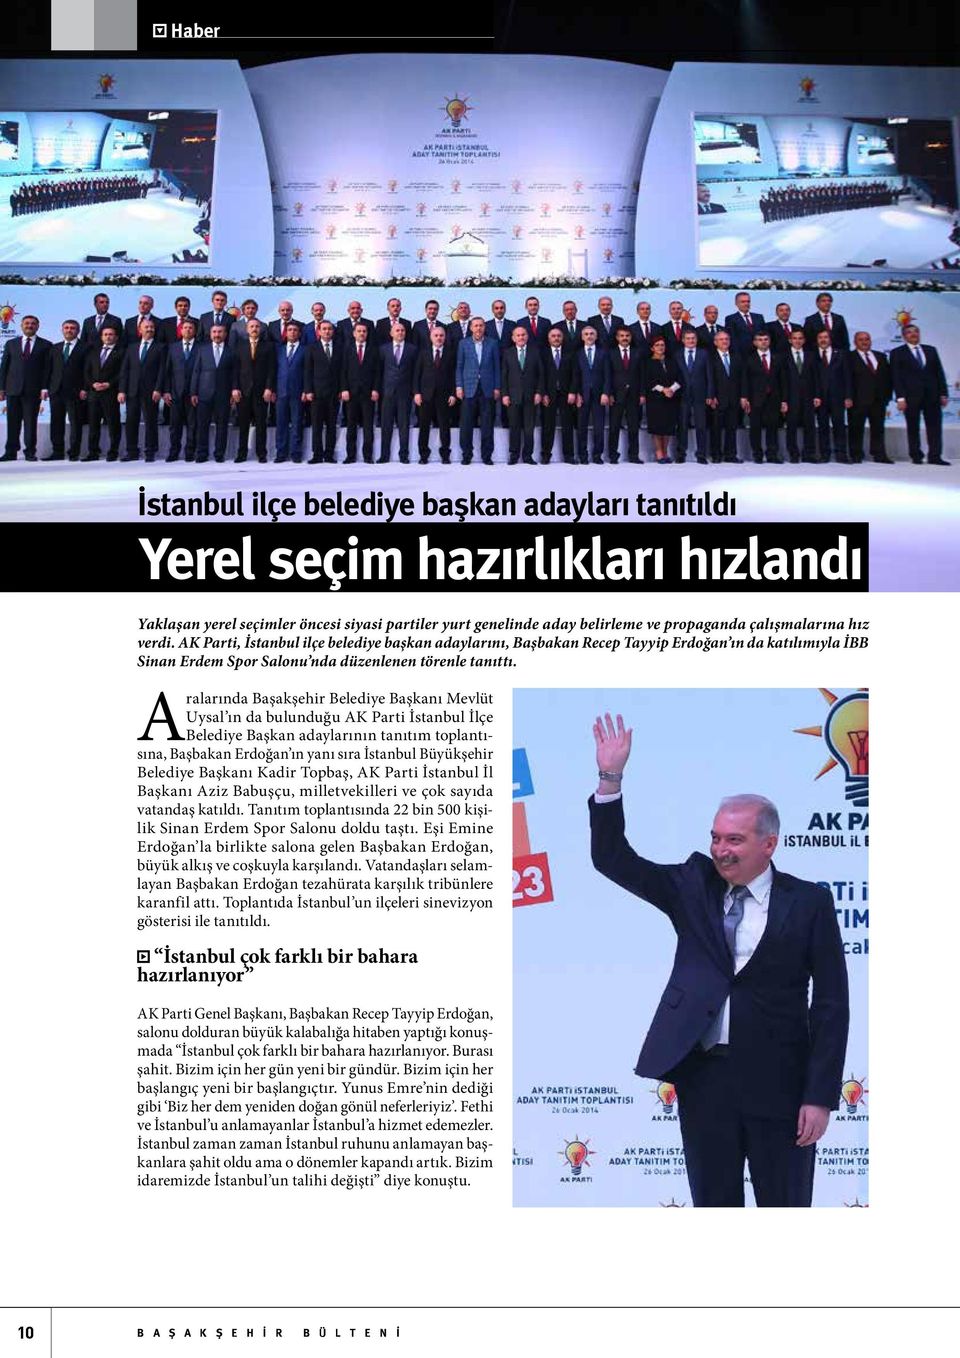 Aralarında Başakşehir Belediye Başkanı Mevlüt Uysal ın da bulunduğu AK Parti İstanbul İlçe Belediye Başkan adaylarının tanıtım toplantısına, Başbakan Erdoğan ın yanı sıra İstanbul Büyükşehir Belediye